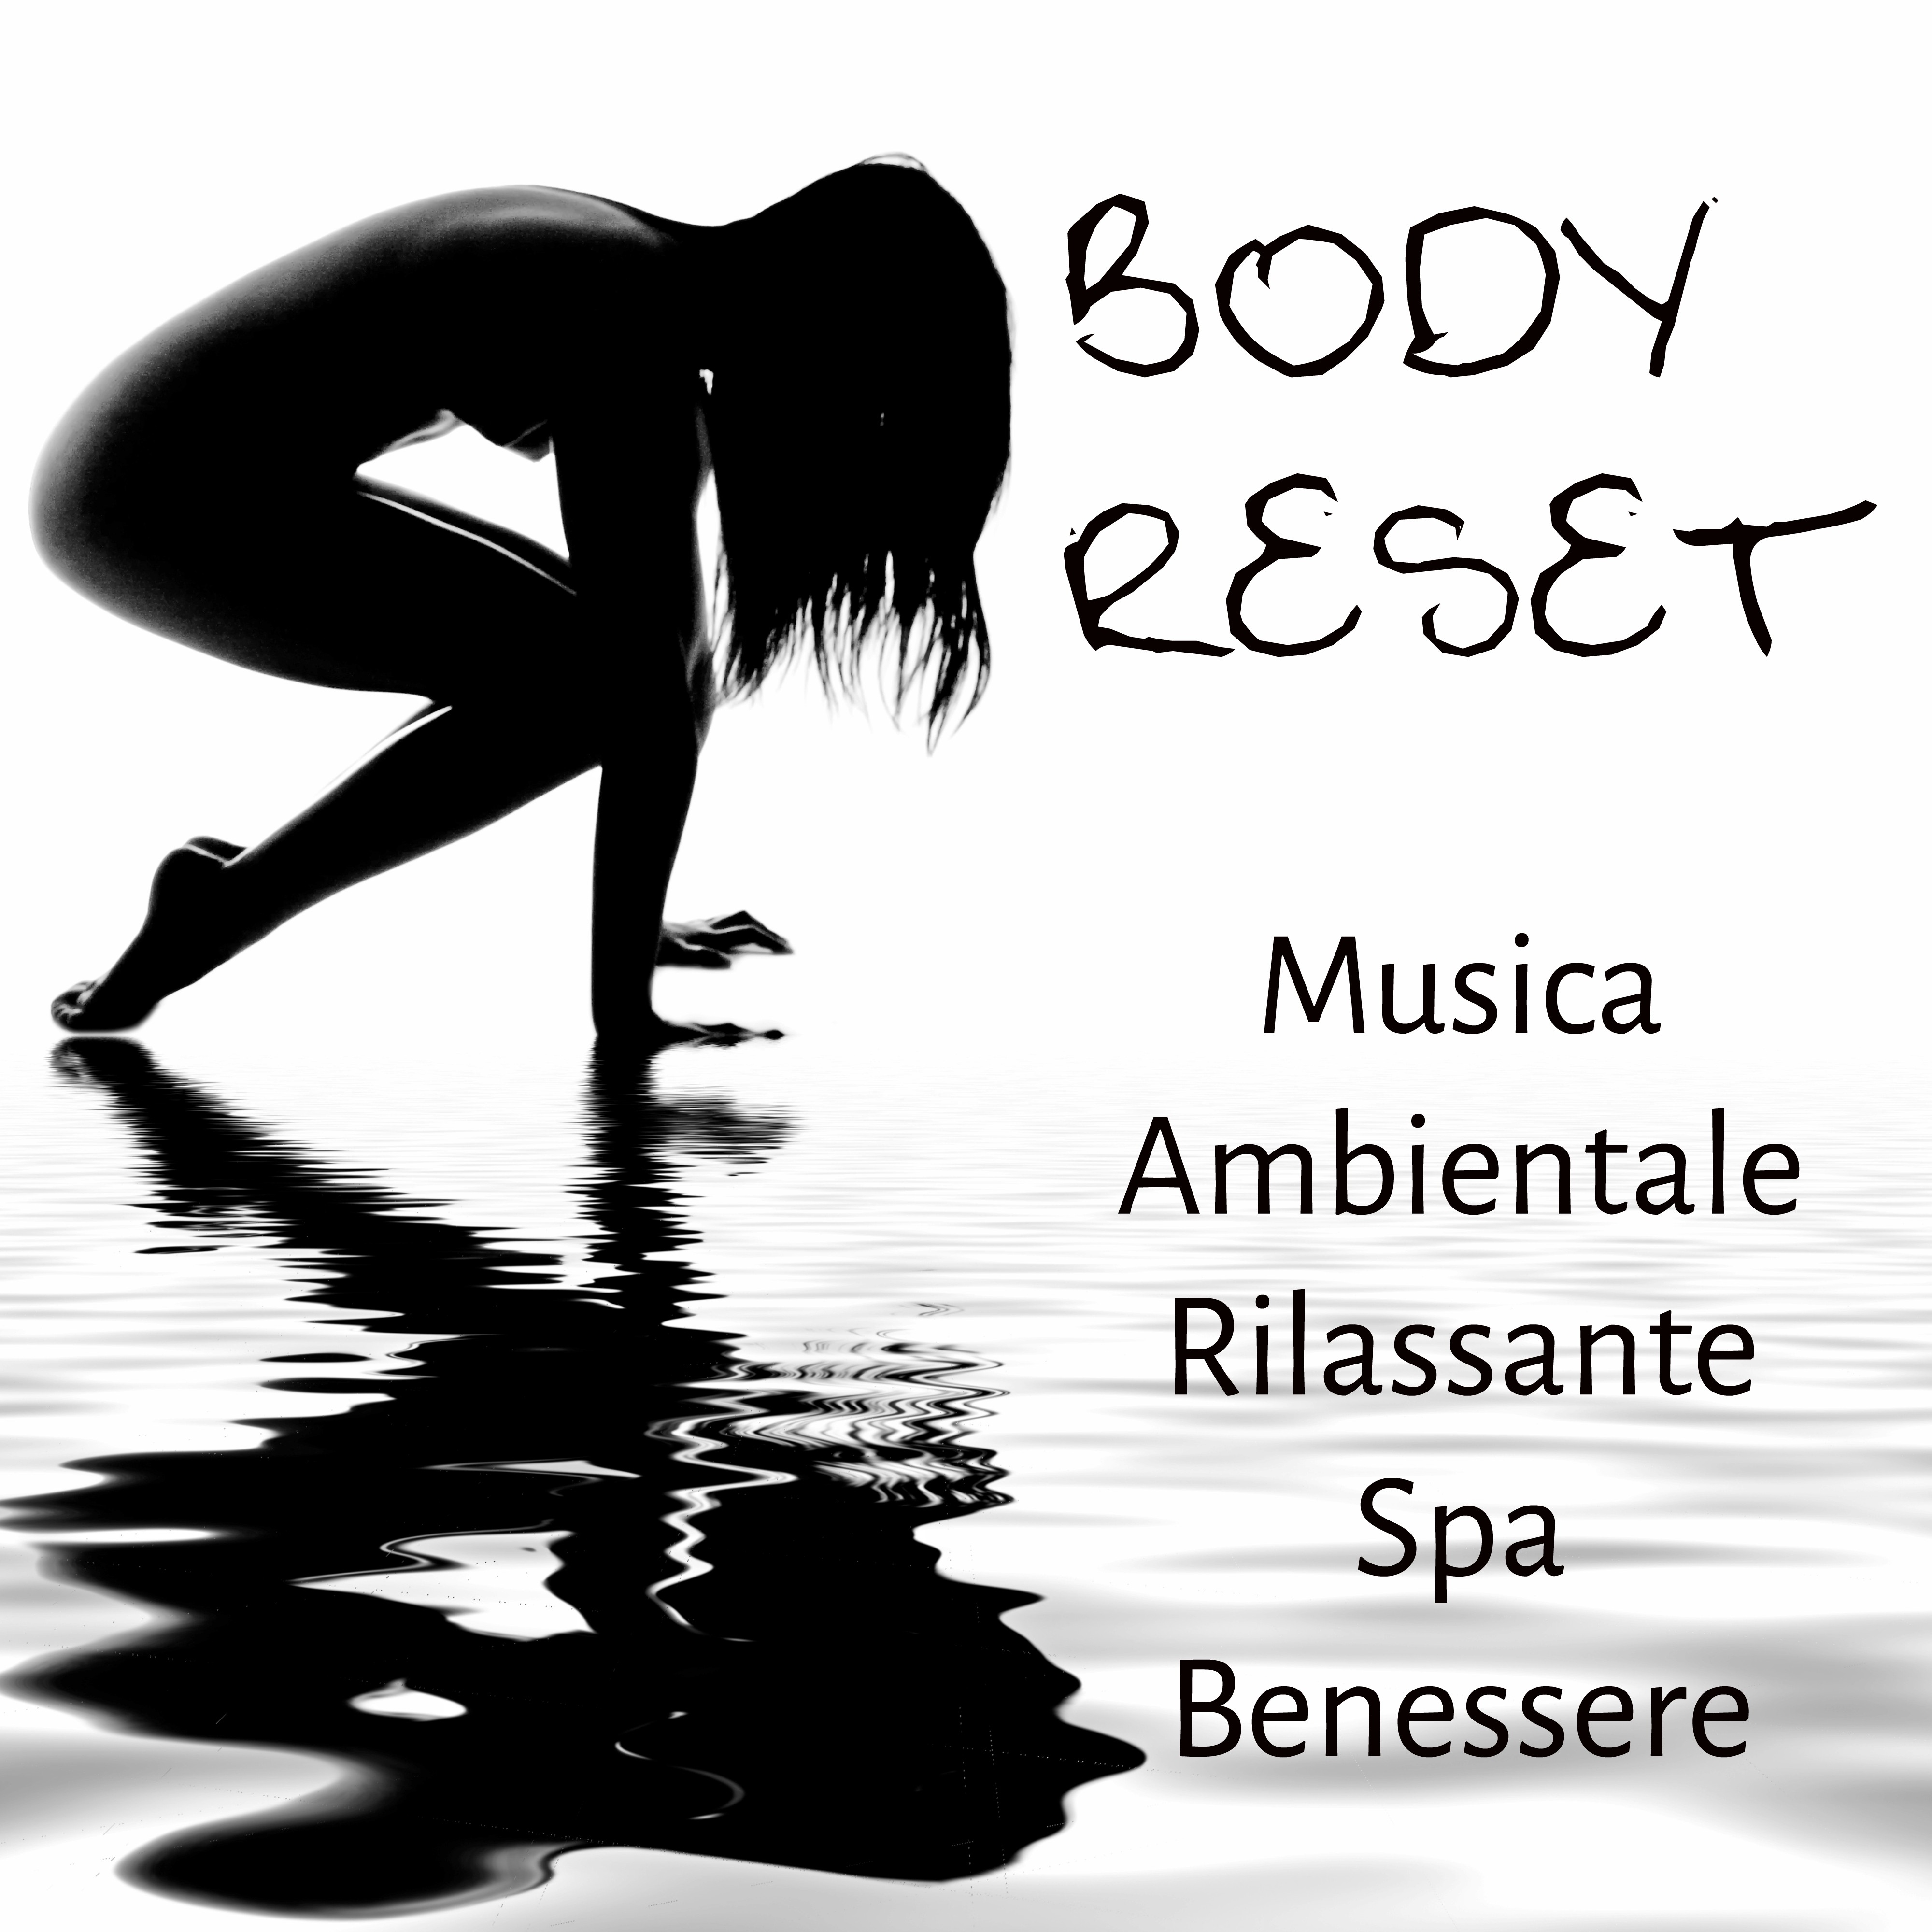 Body Reset - Musica Ambientale Rilassante Spa Benessere per Esercizi Meditazione Equilibrare Chakra e Aumentare la Concentrazione